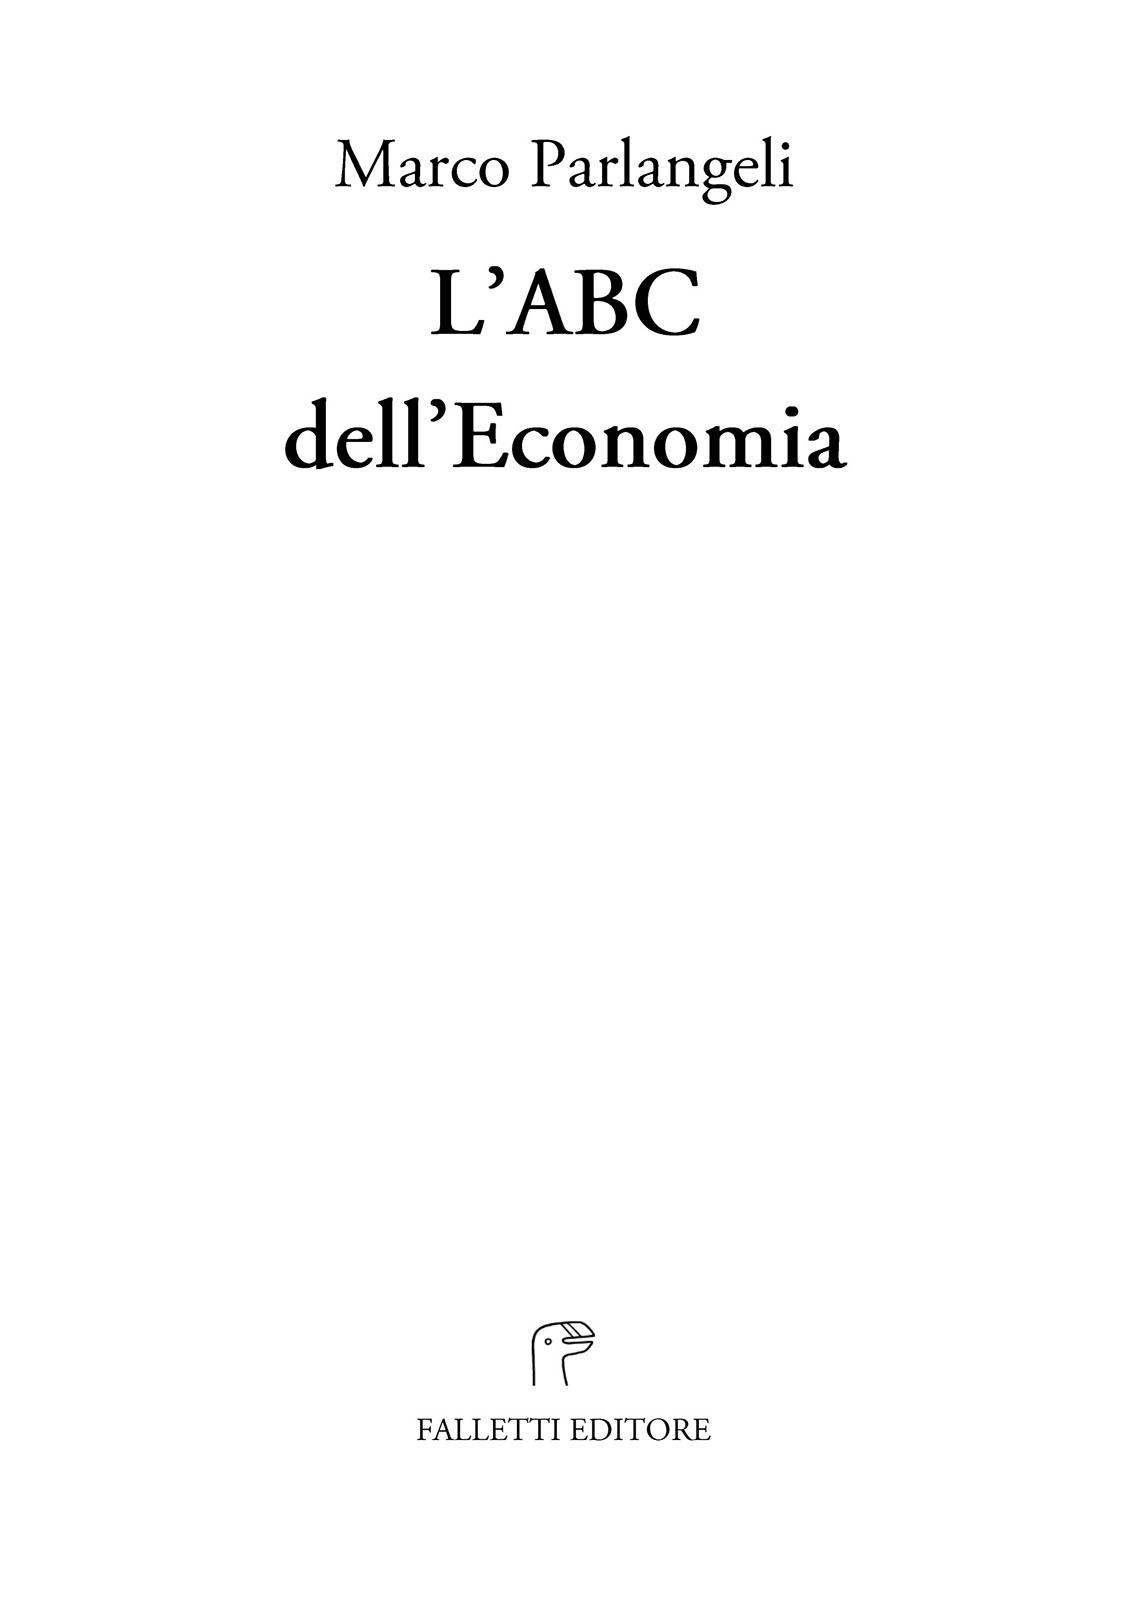 L’ABC dell’Economia